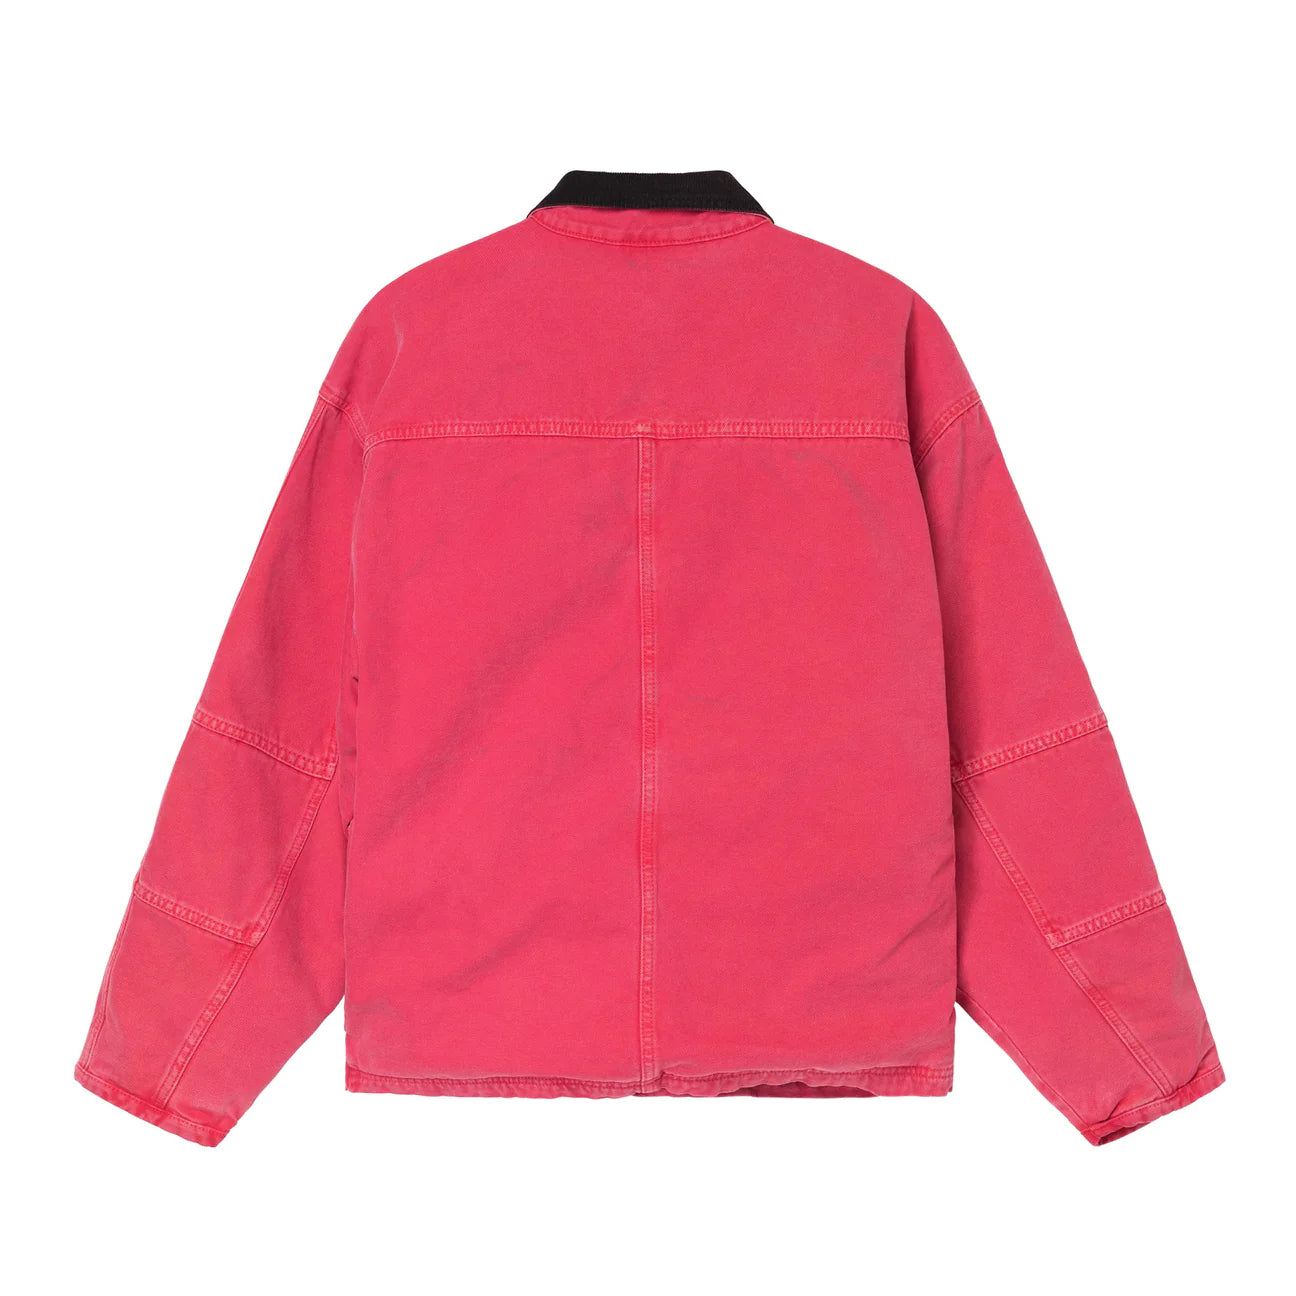 Stüssy Washed Canvas Shop Jacket Hot Pink